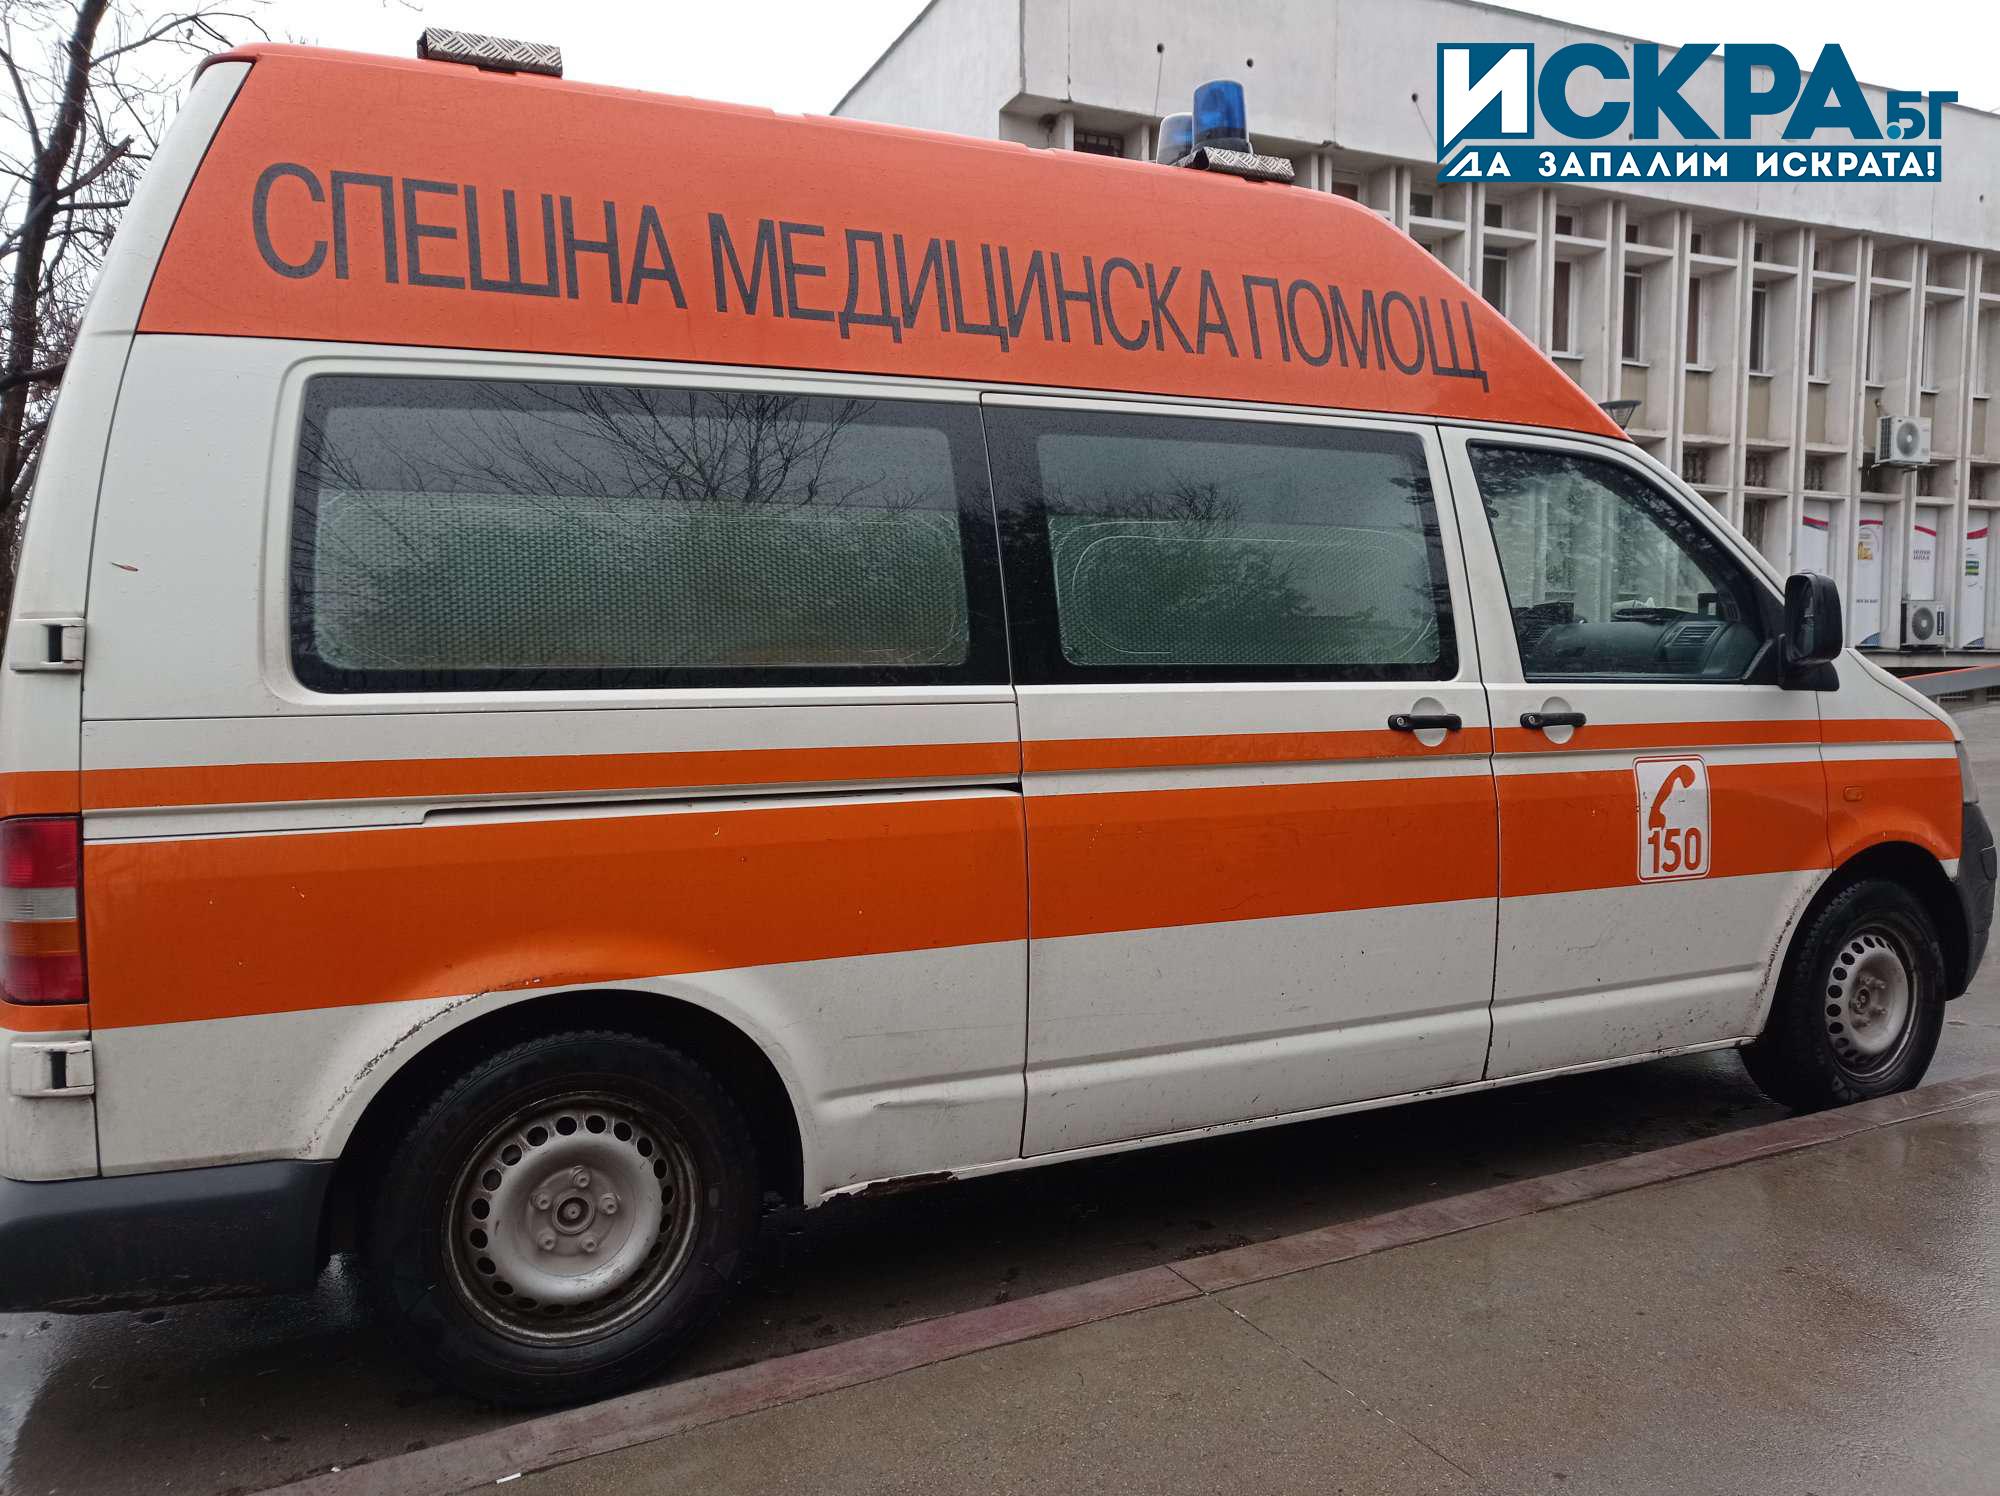 Двама шофьори са пострадали при тежка катастрофа в Новозагорско съобщиха